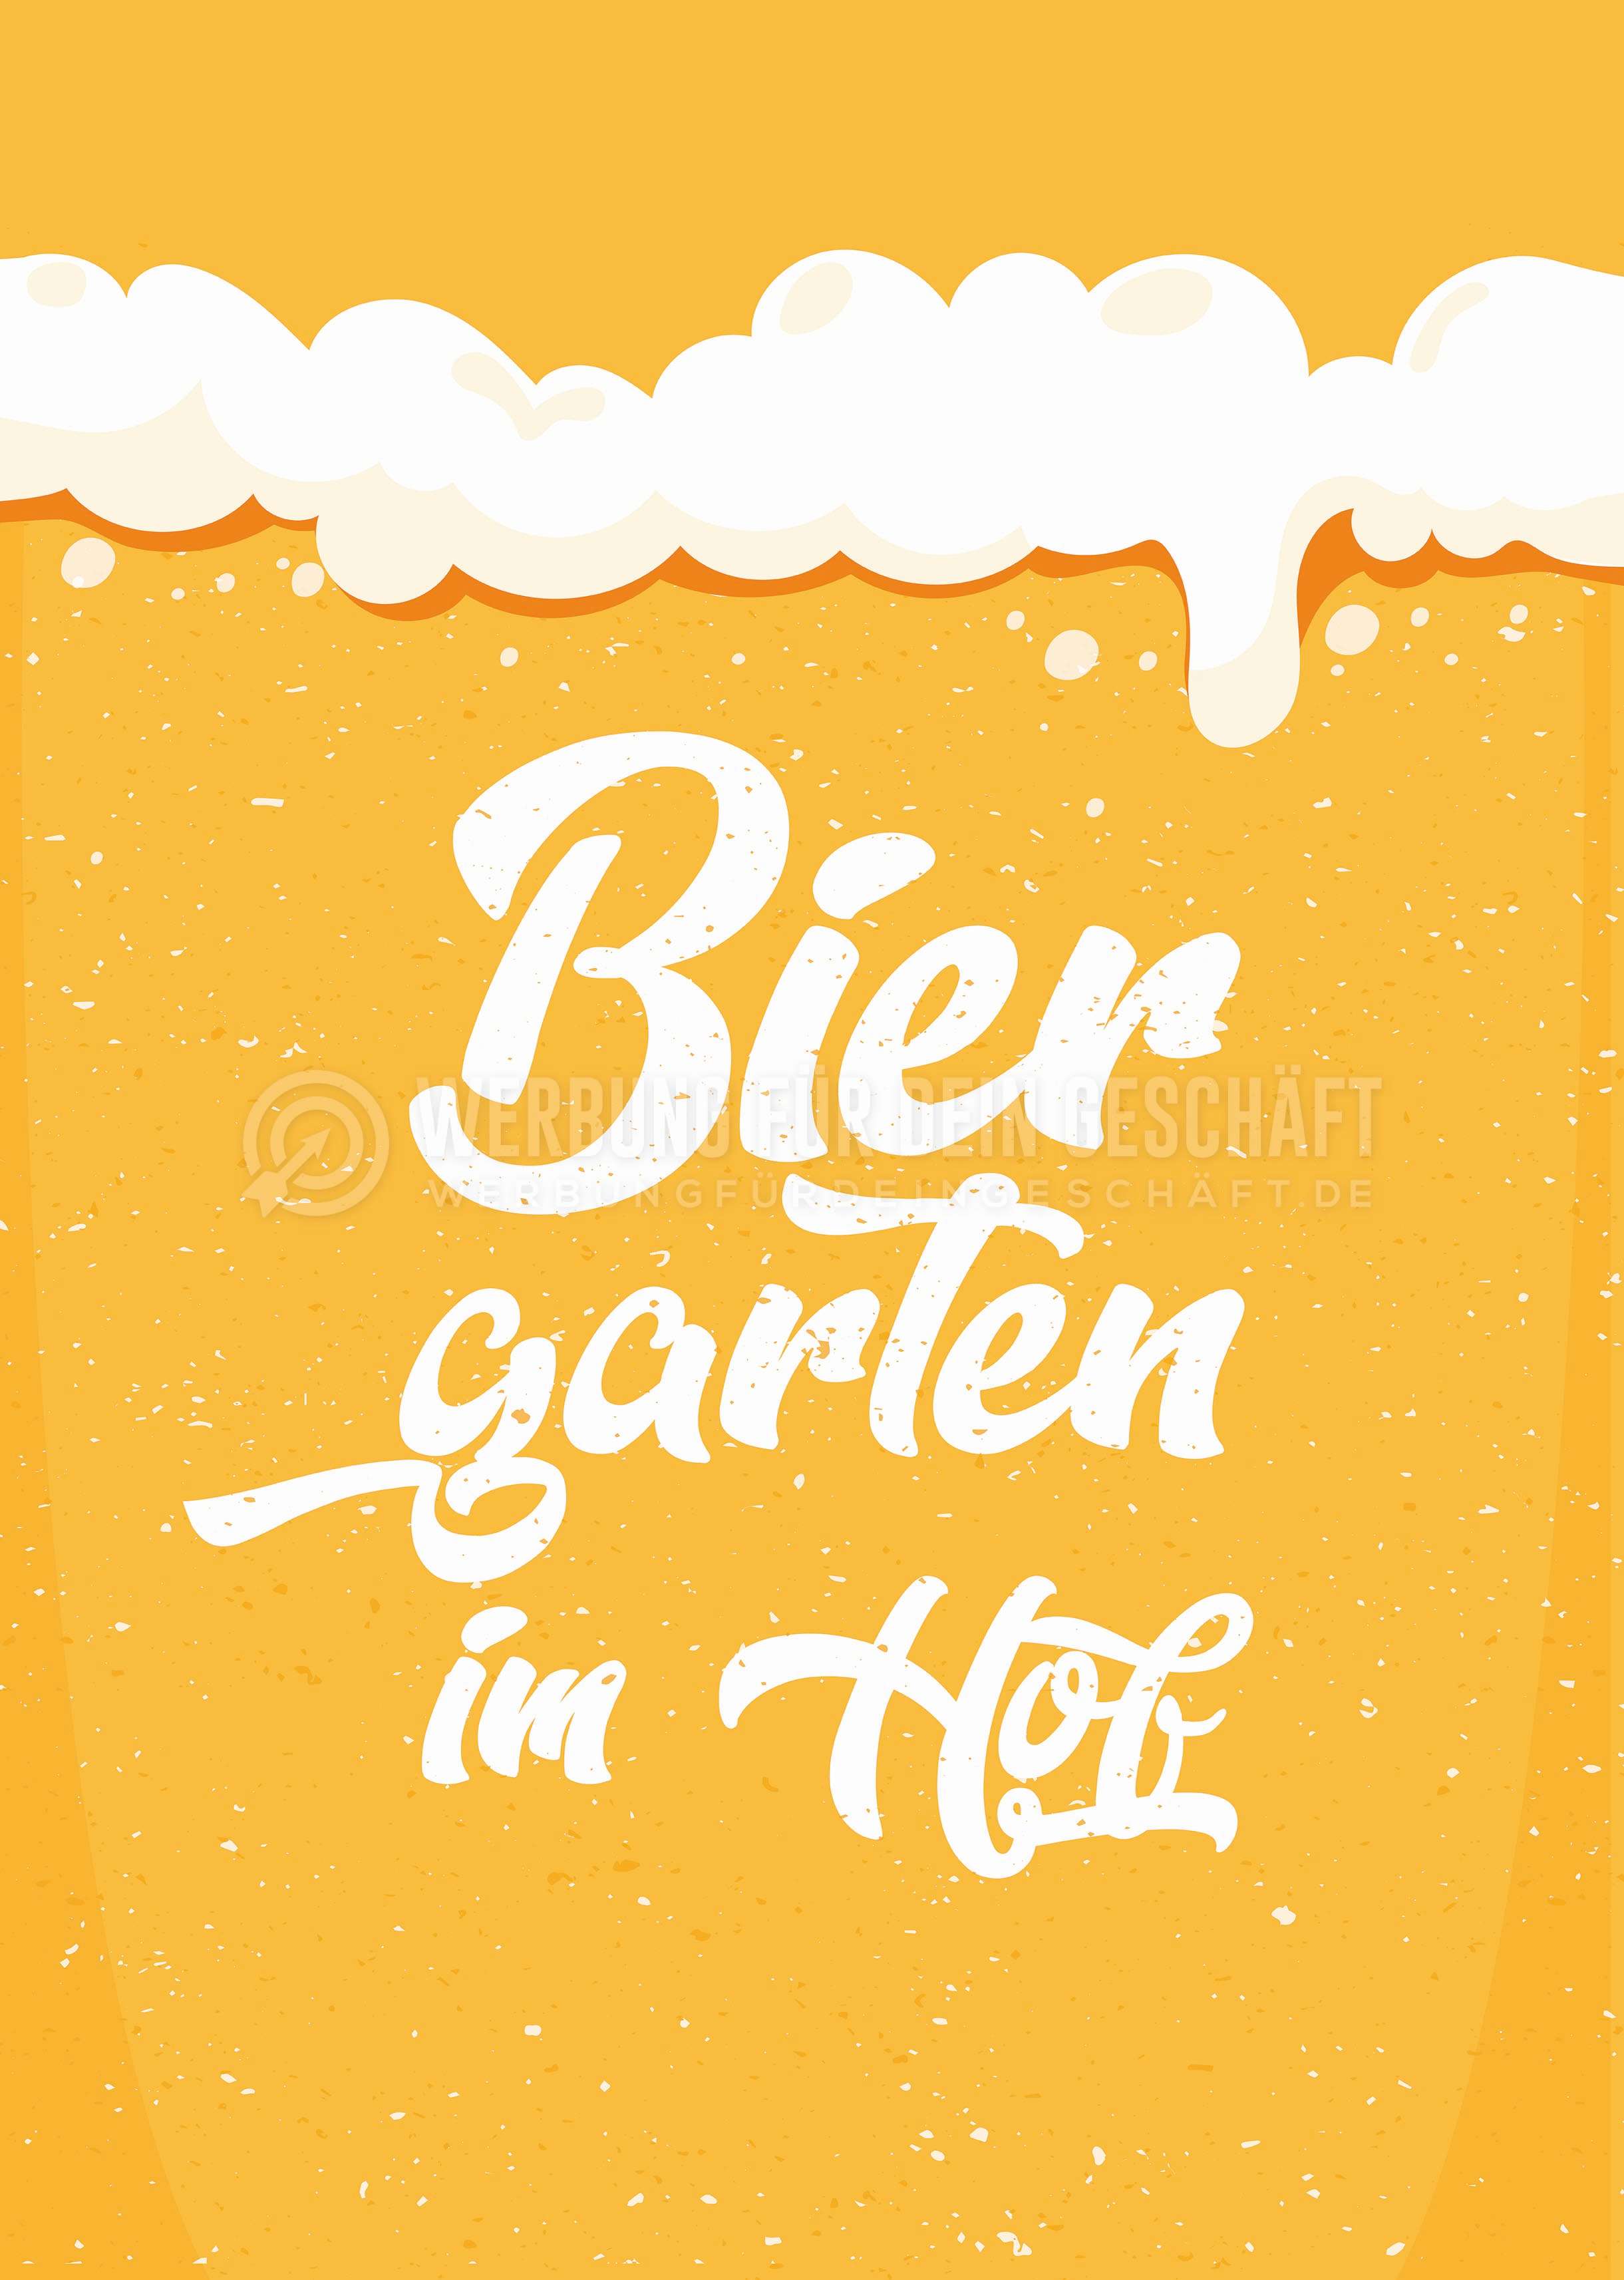 Biergarten im Hof Poster | Plakat für Werbeaufsteller